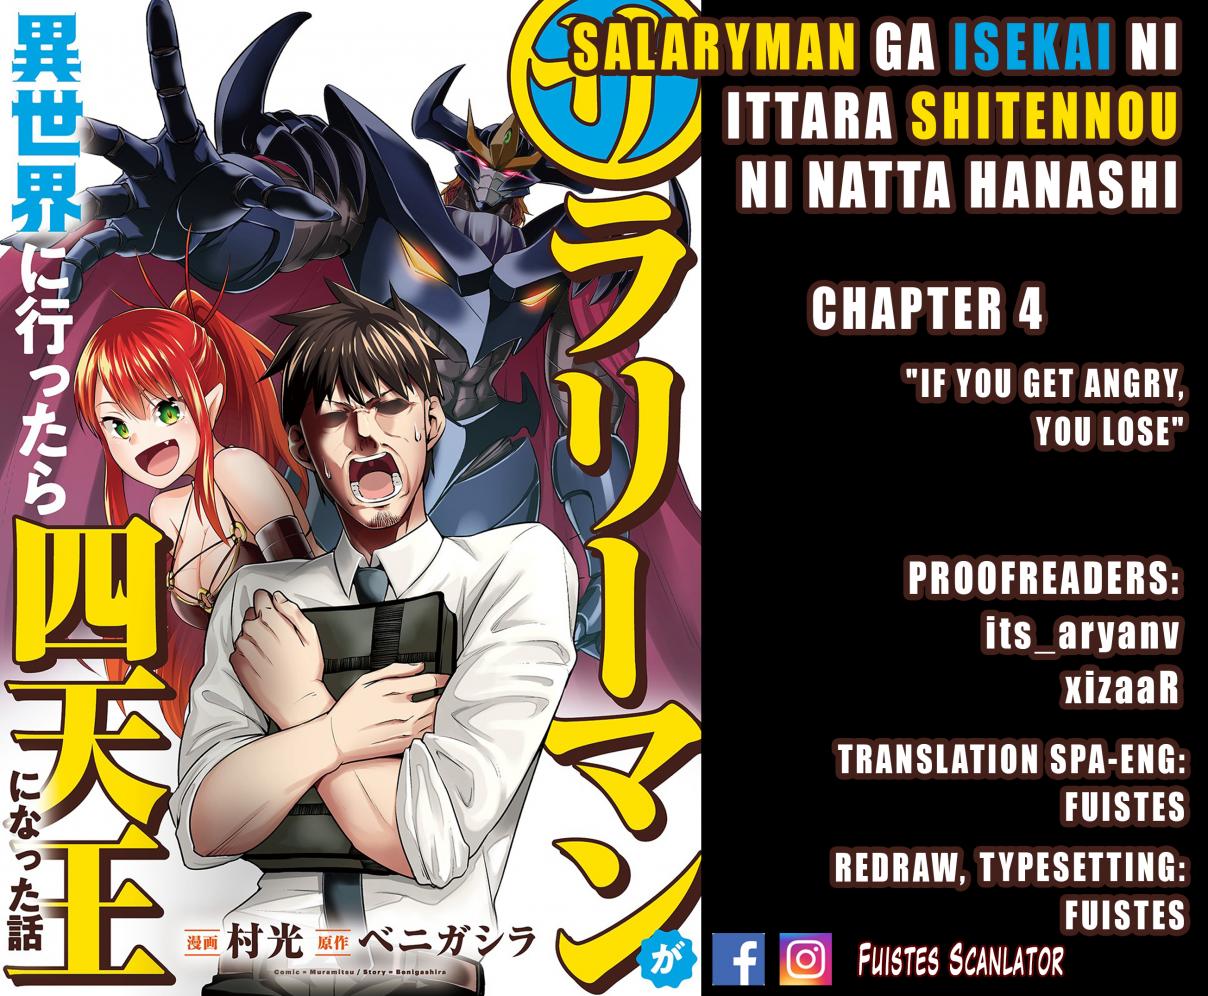 Salaryman ga Isekai ni Ittara Shitennou ni Natta Hanashi Vol. 1 Ch. 4